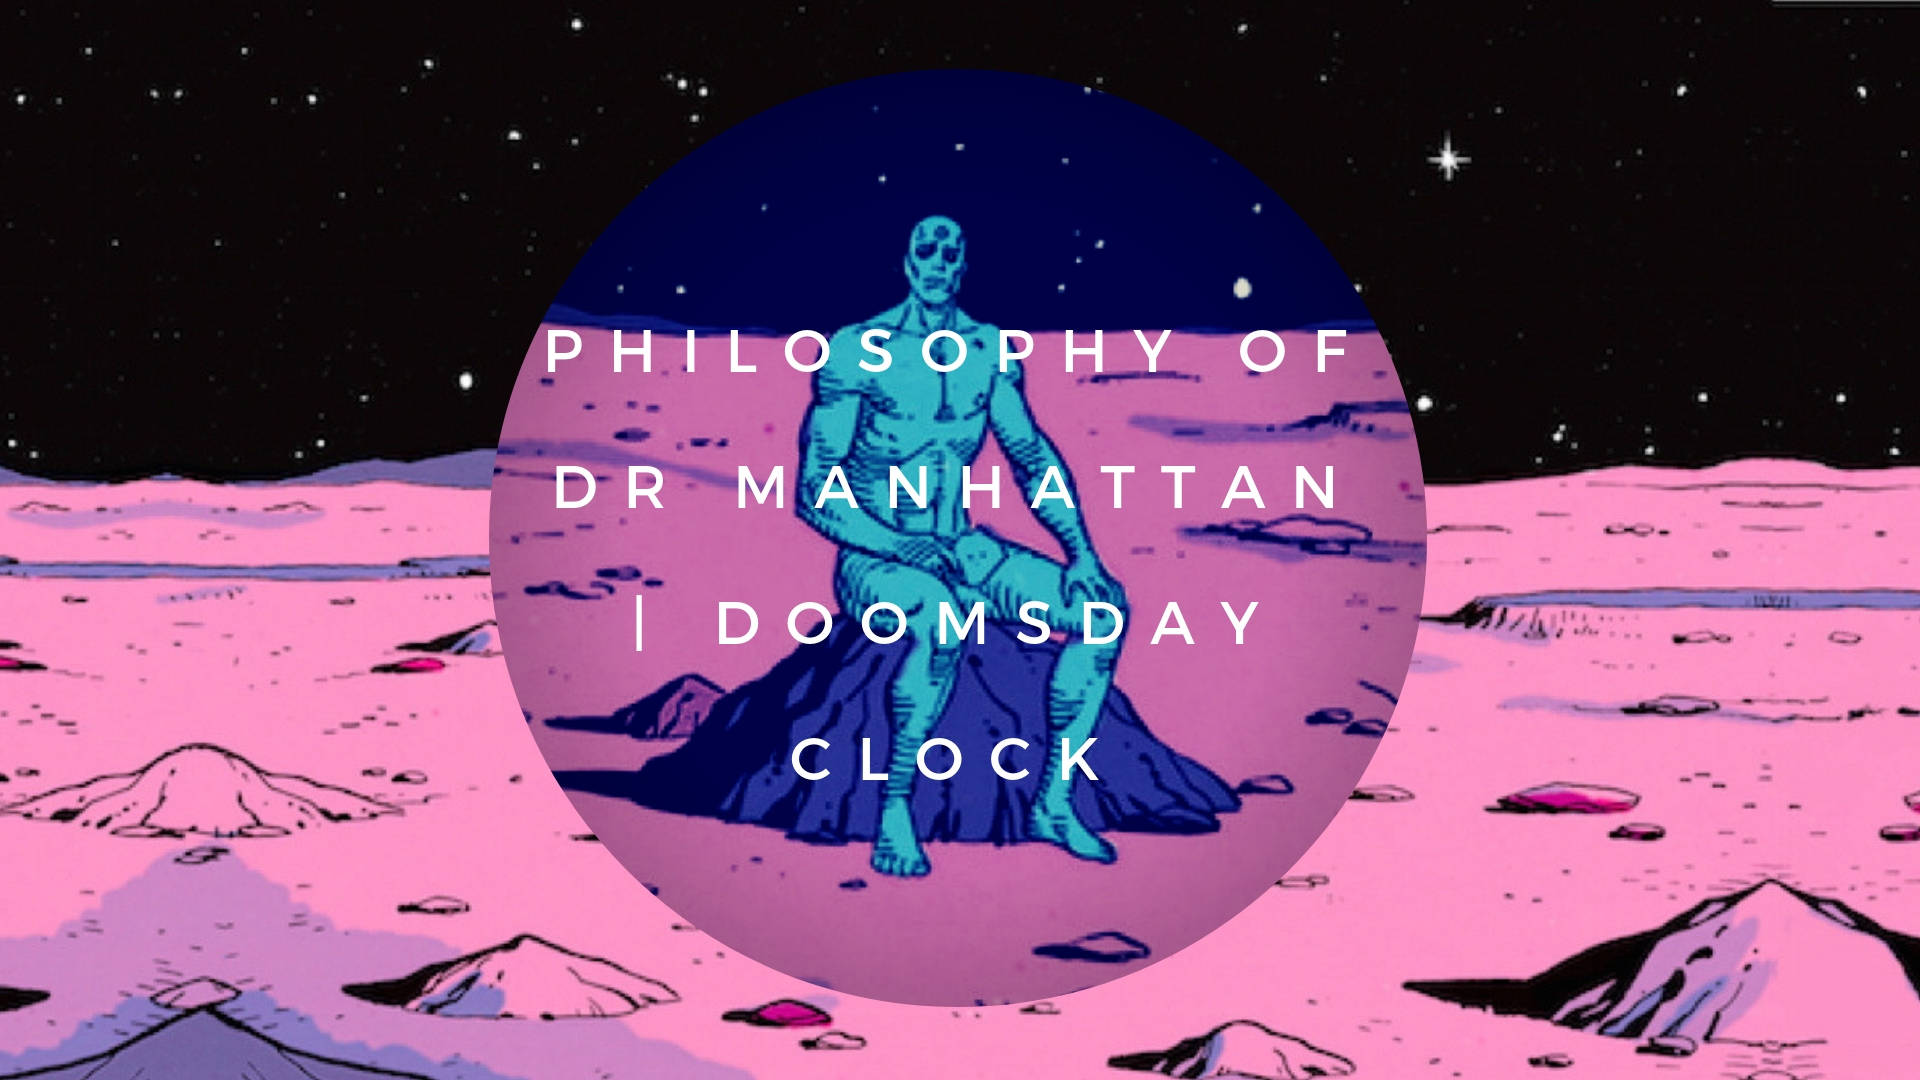 Doctormanhattan Philosophie Doomsday Clock Wallpaper